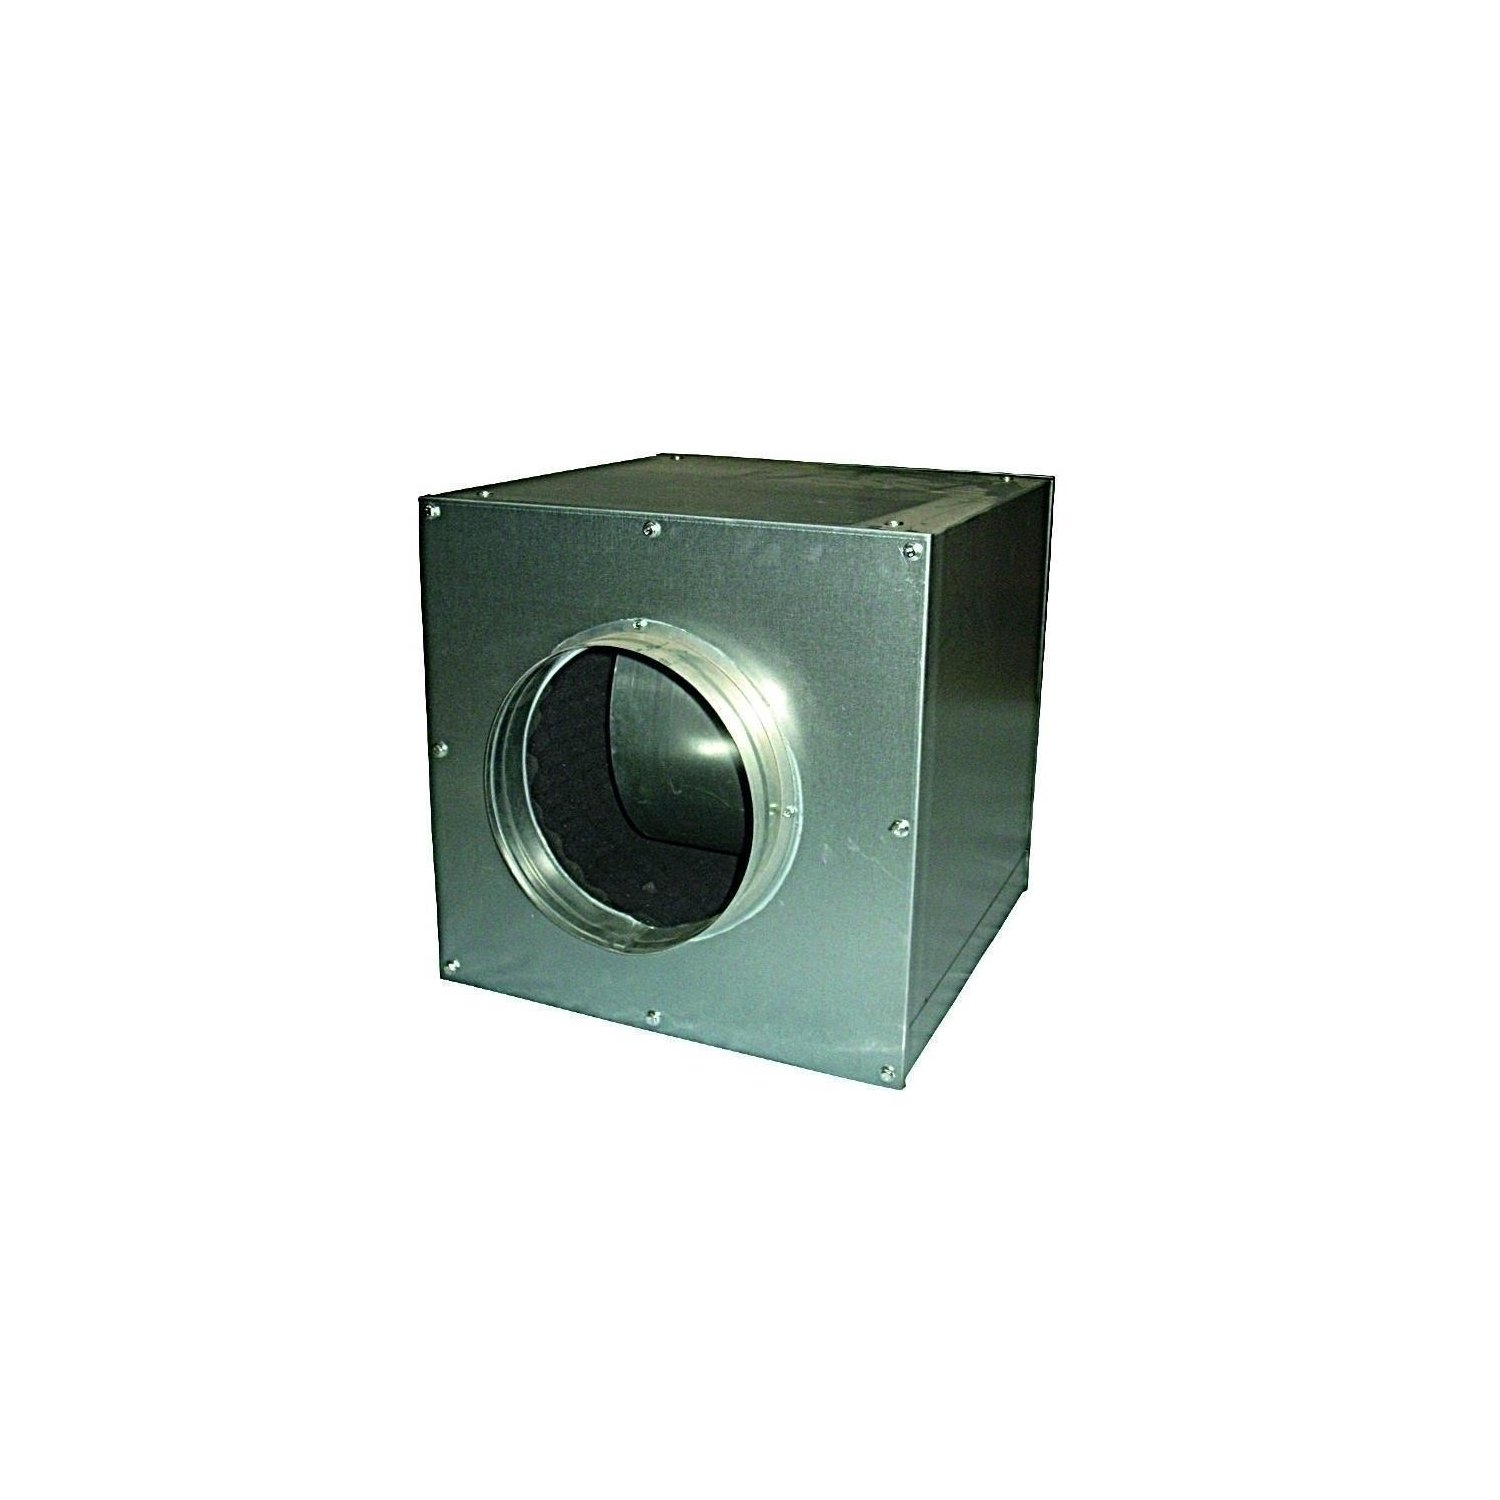 Cultivalley AC Lüfterbox 2500m-h aufgehangen Metall unter Luft & Wasser > Lüftung > Lüfter